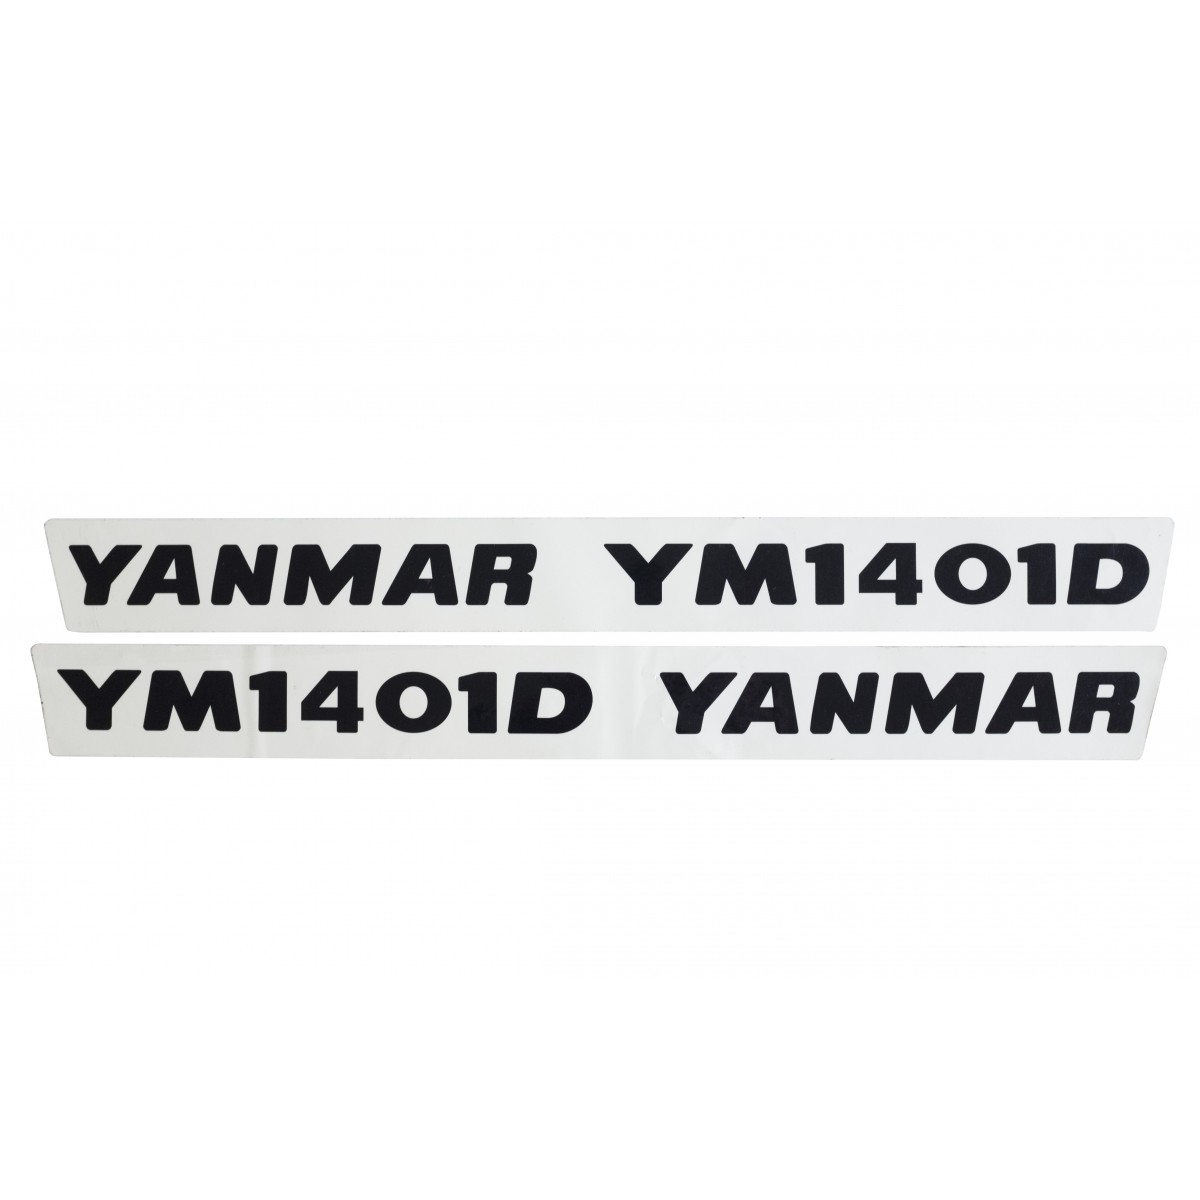 Autocollants (2 pièces) Yanmar YM1401D